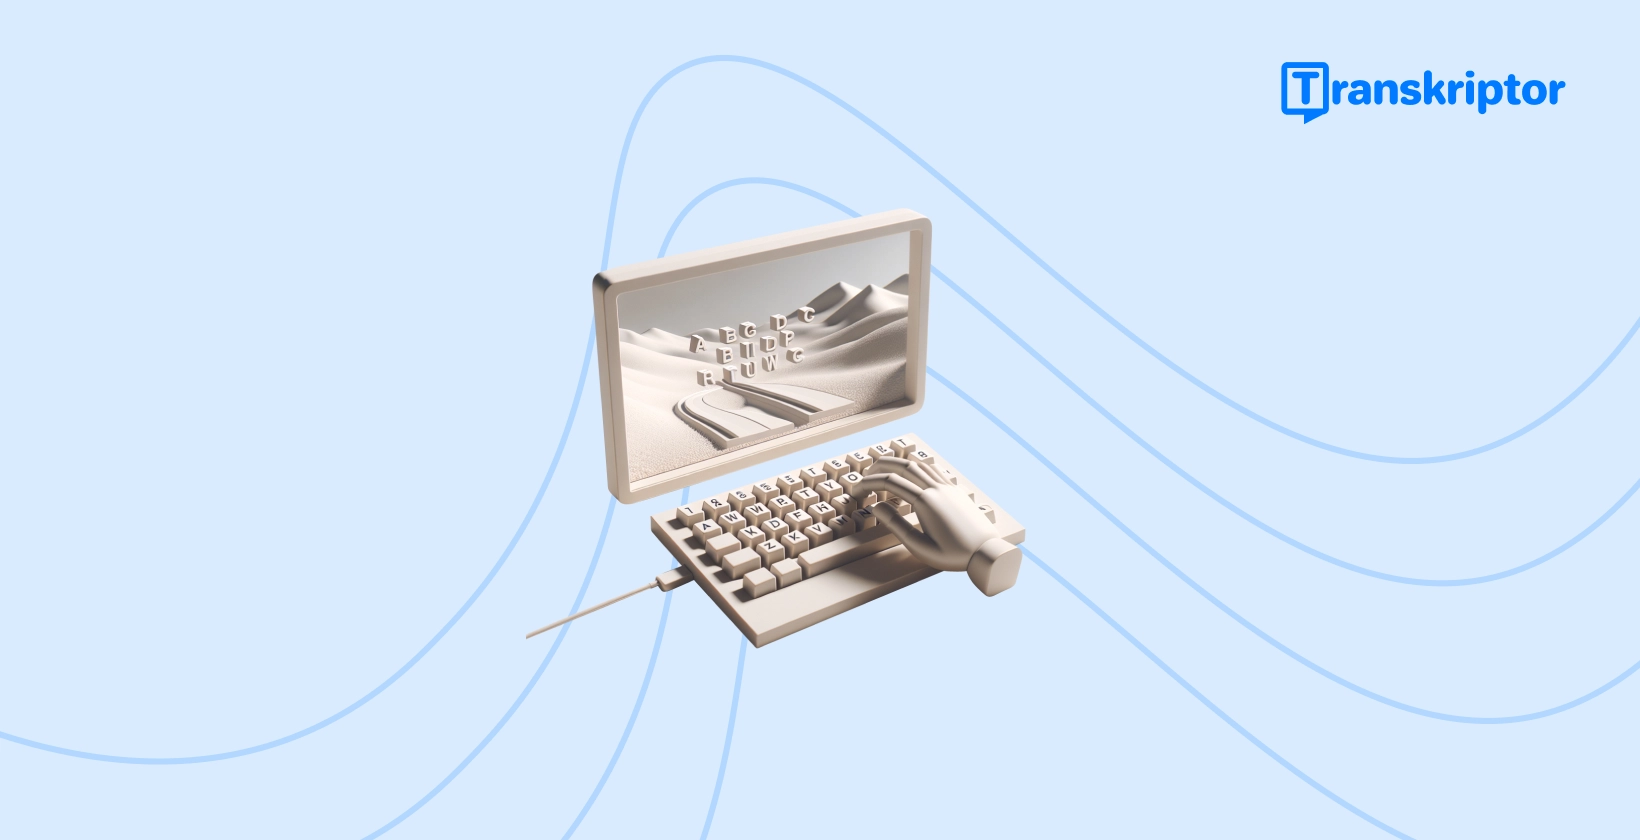 Vintage psací stroj s klávesami tvořícími na jeho papírové roli krajinu, představující kreativní proces přidávání poutavých titulků k TikTok videím.